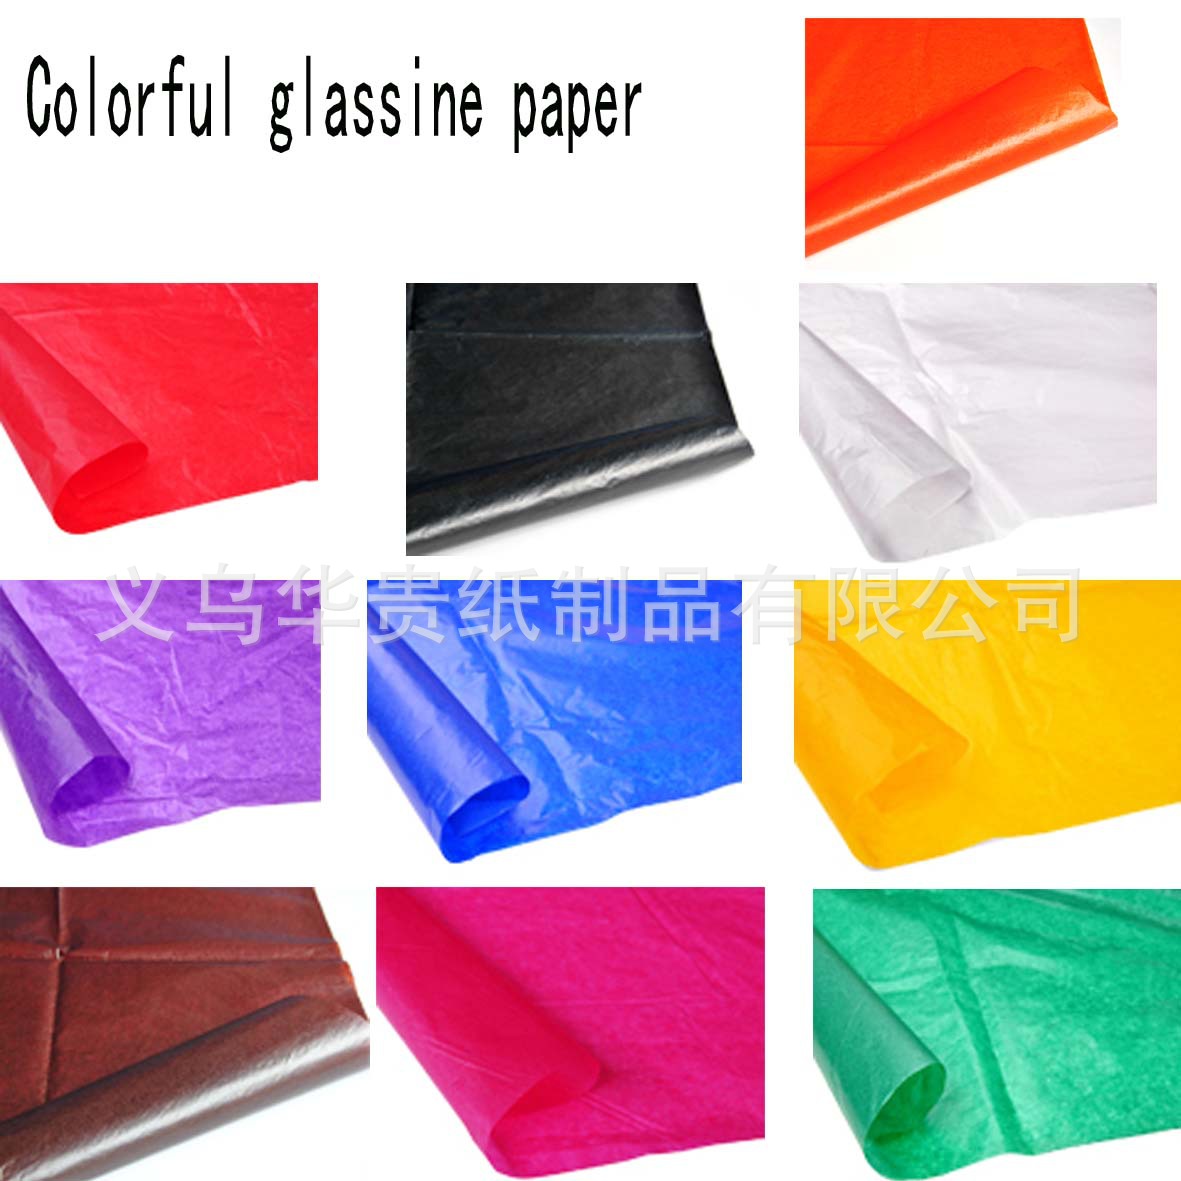 colorful glassine paper